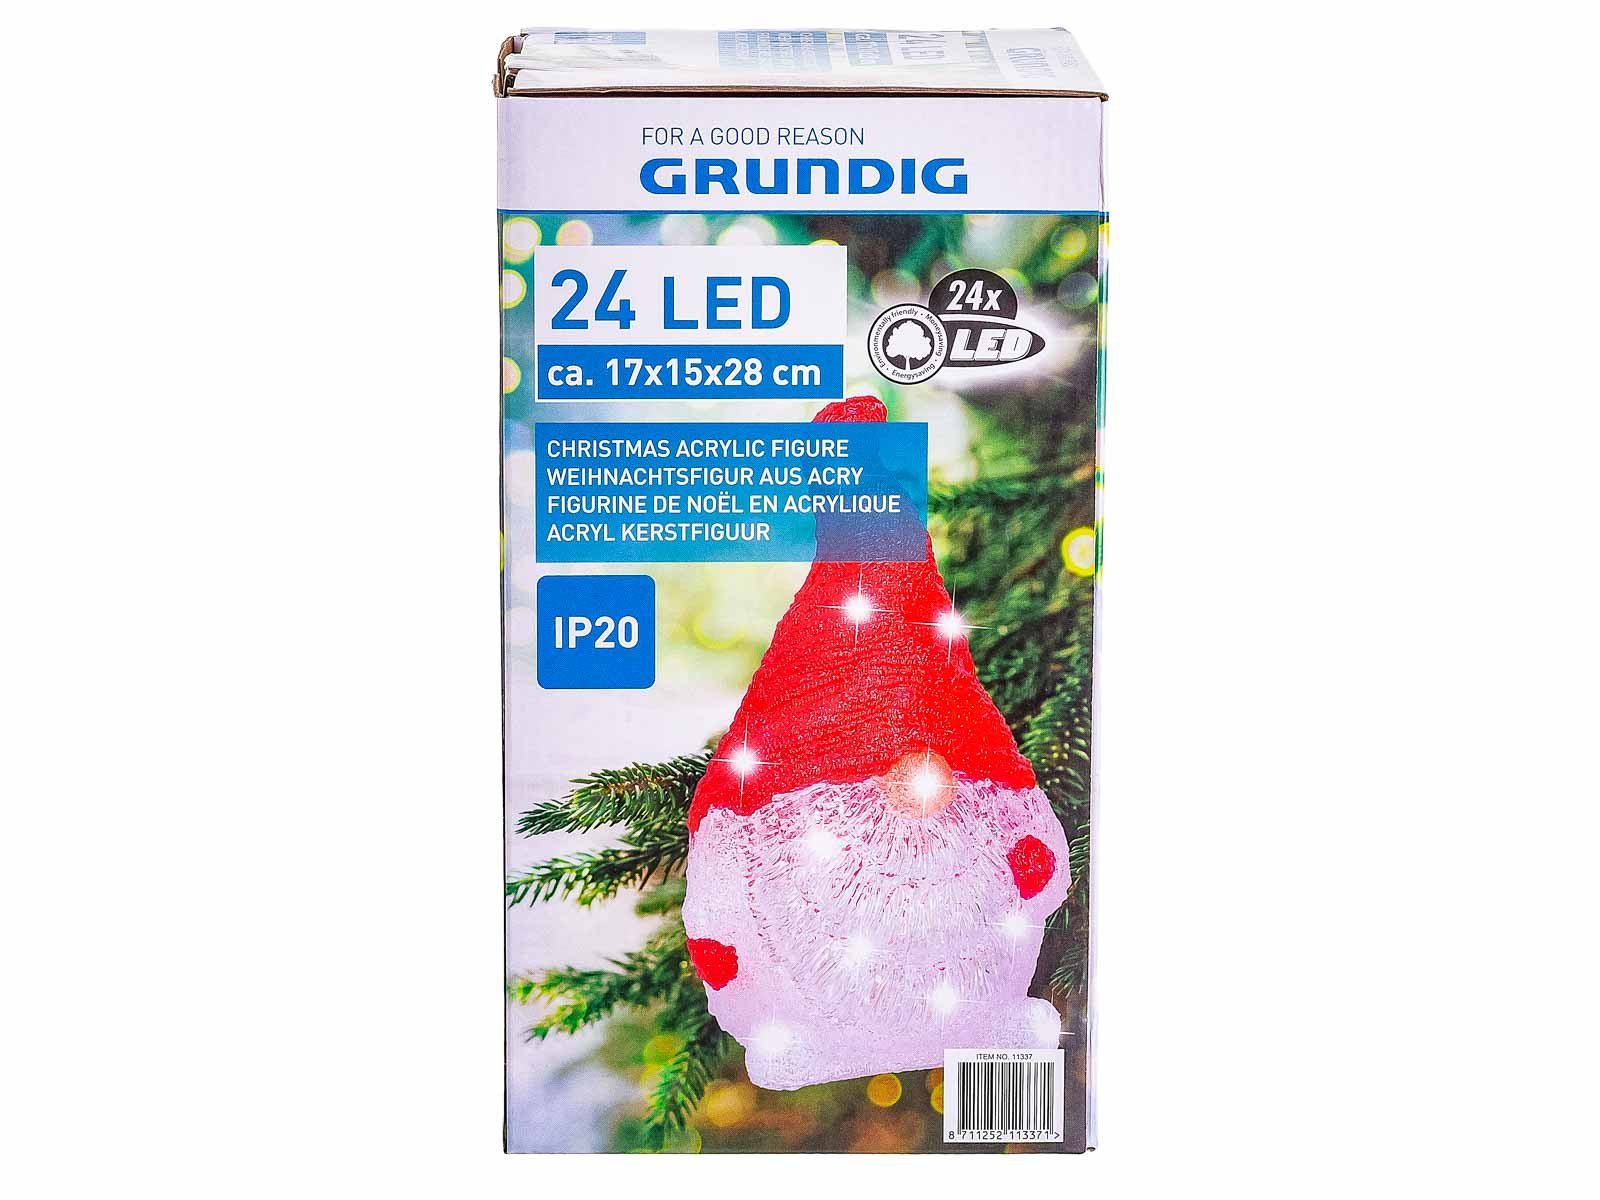 EDCO Wichtel Grundig (1 rot LED St), 24